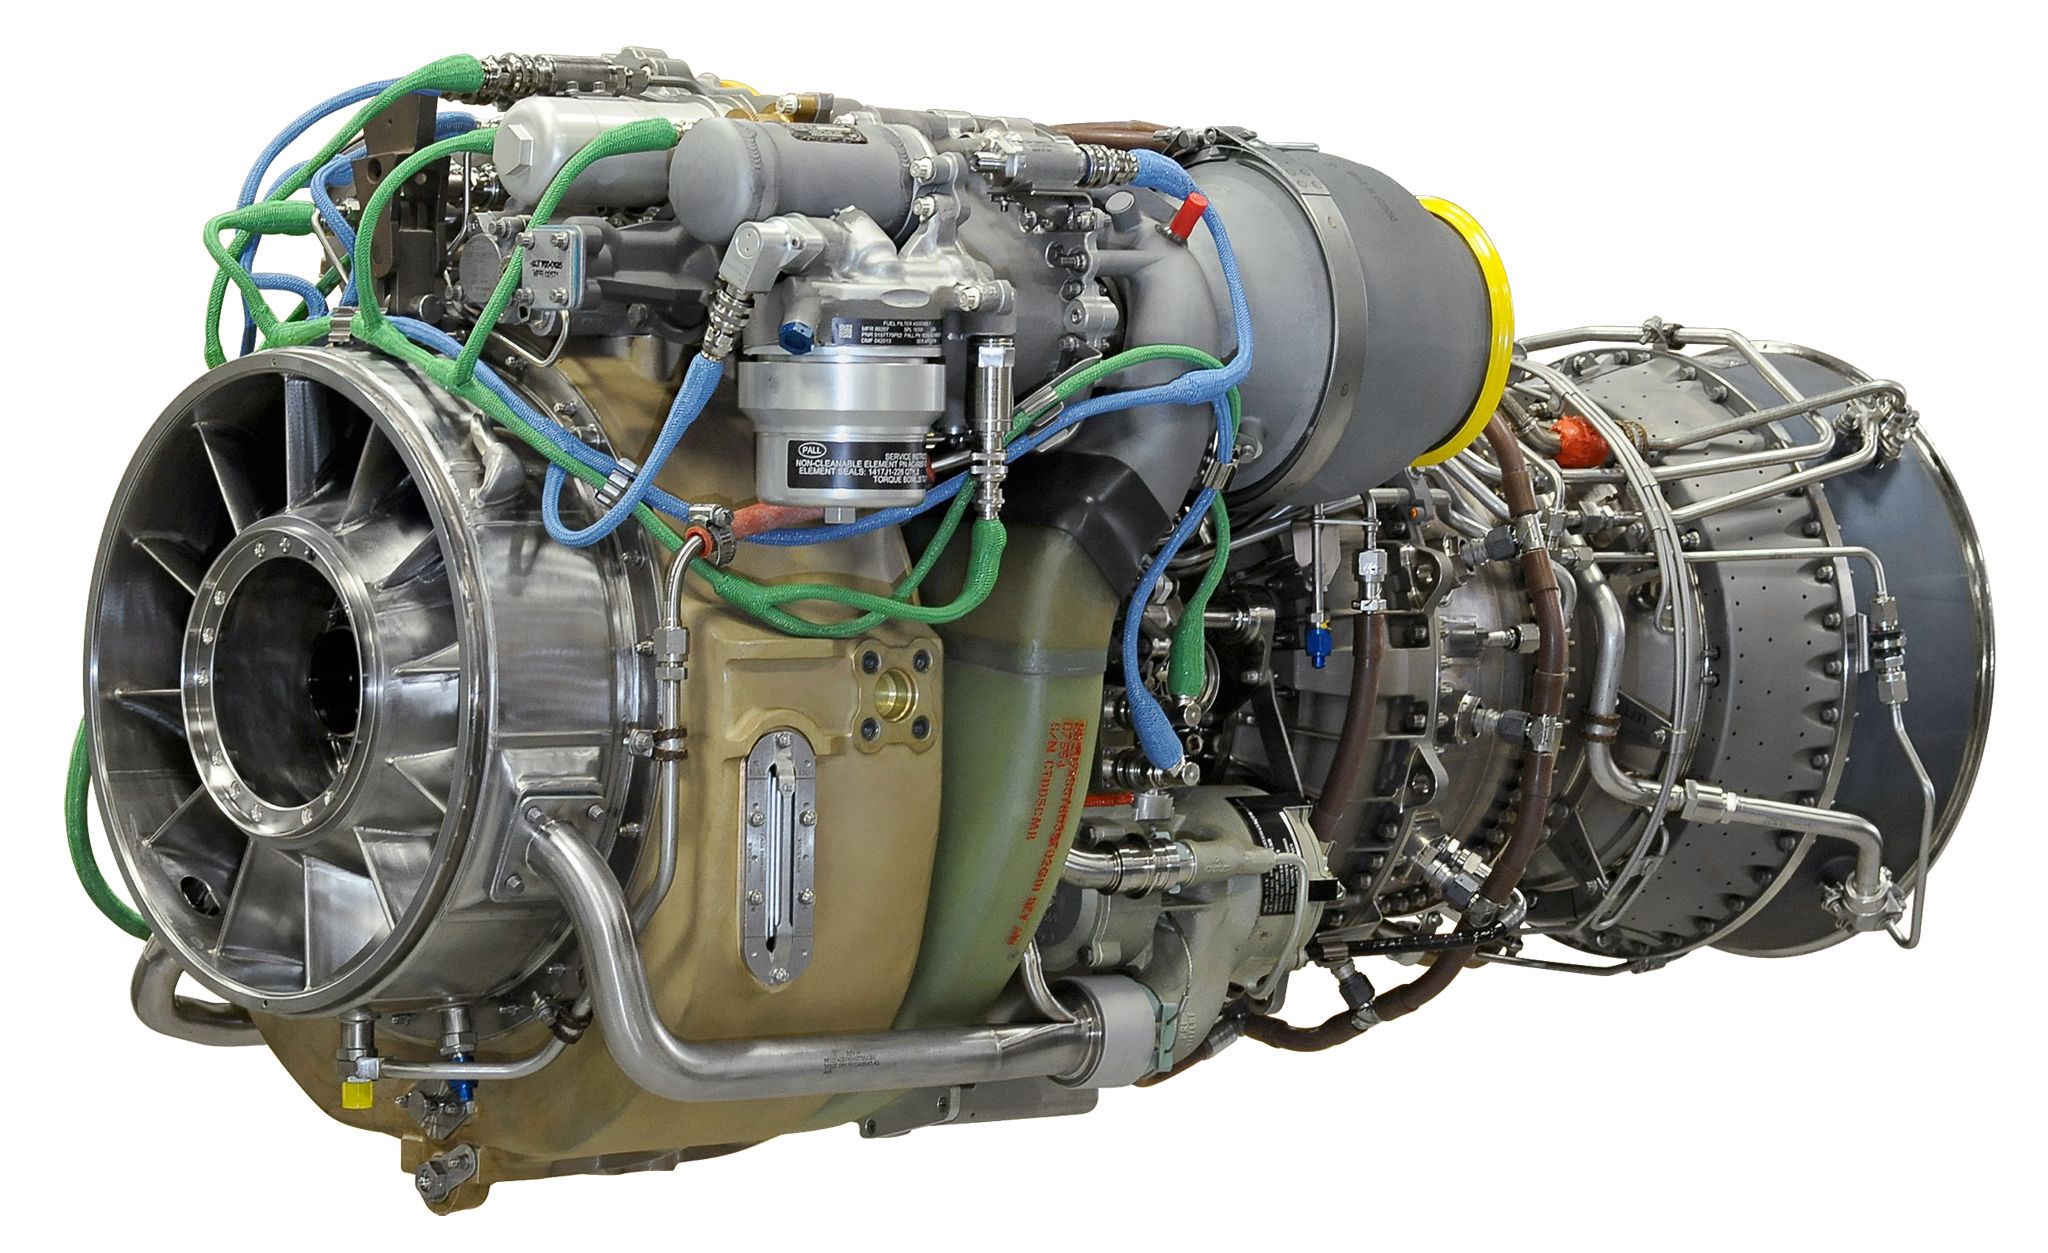 GE's CT7-2E1 engine